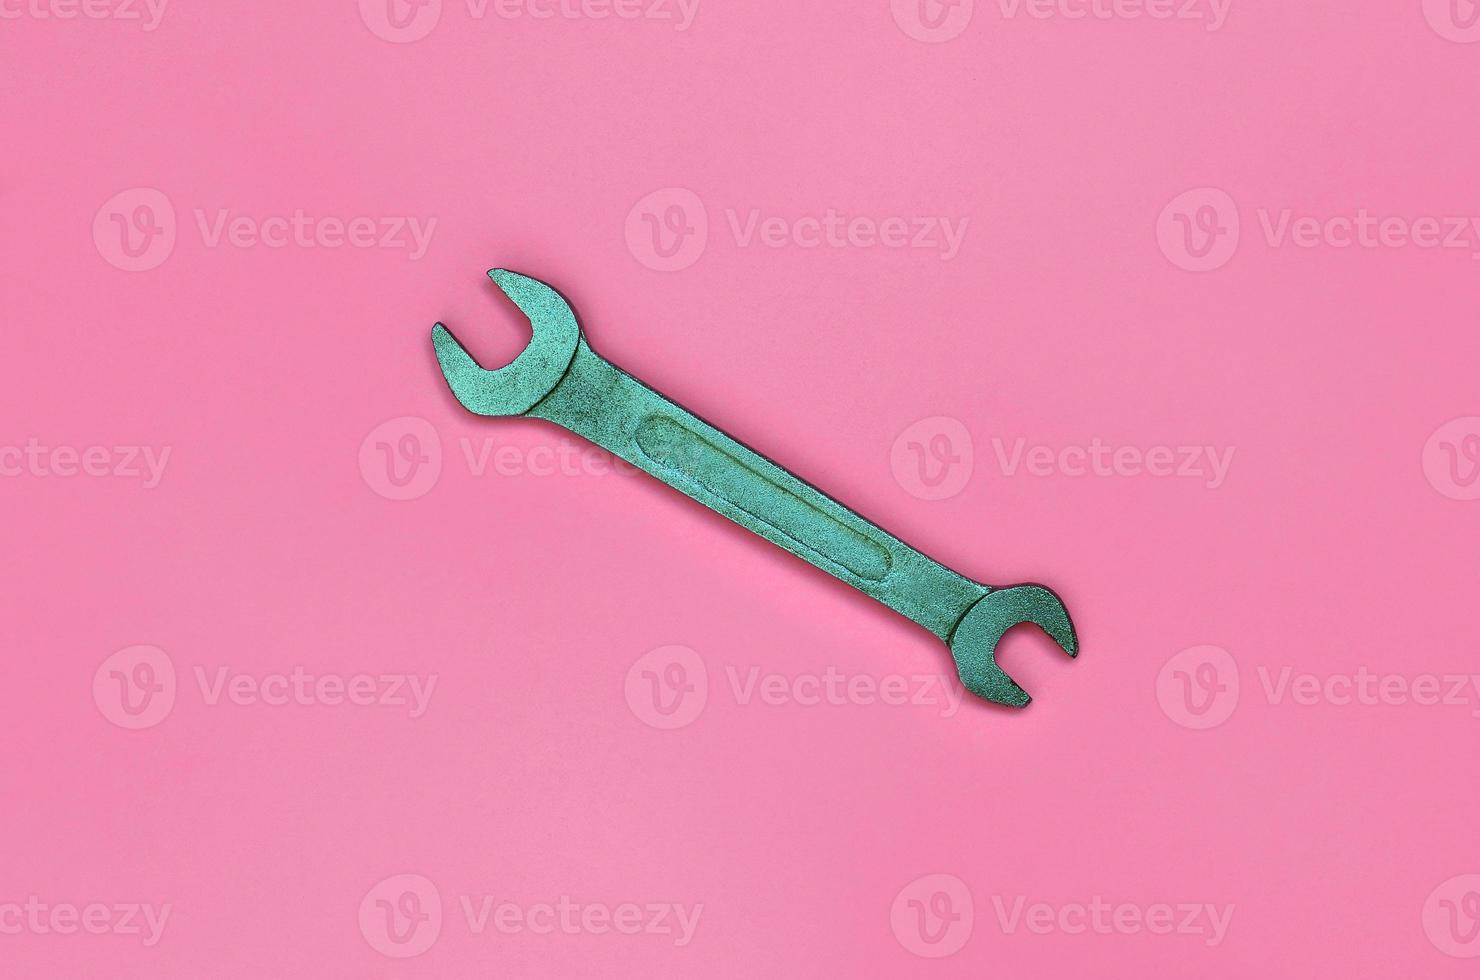 chave metálica de mentira no fundo de textura de papel de cor rosa pastel de moda em conceito mínimo foto